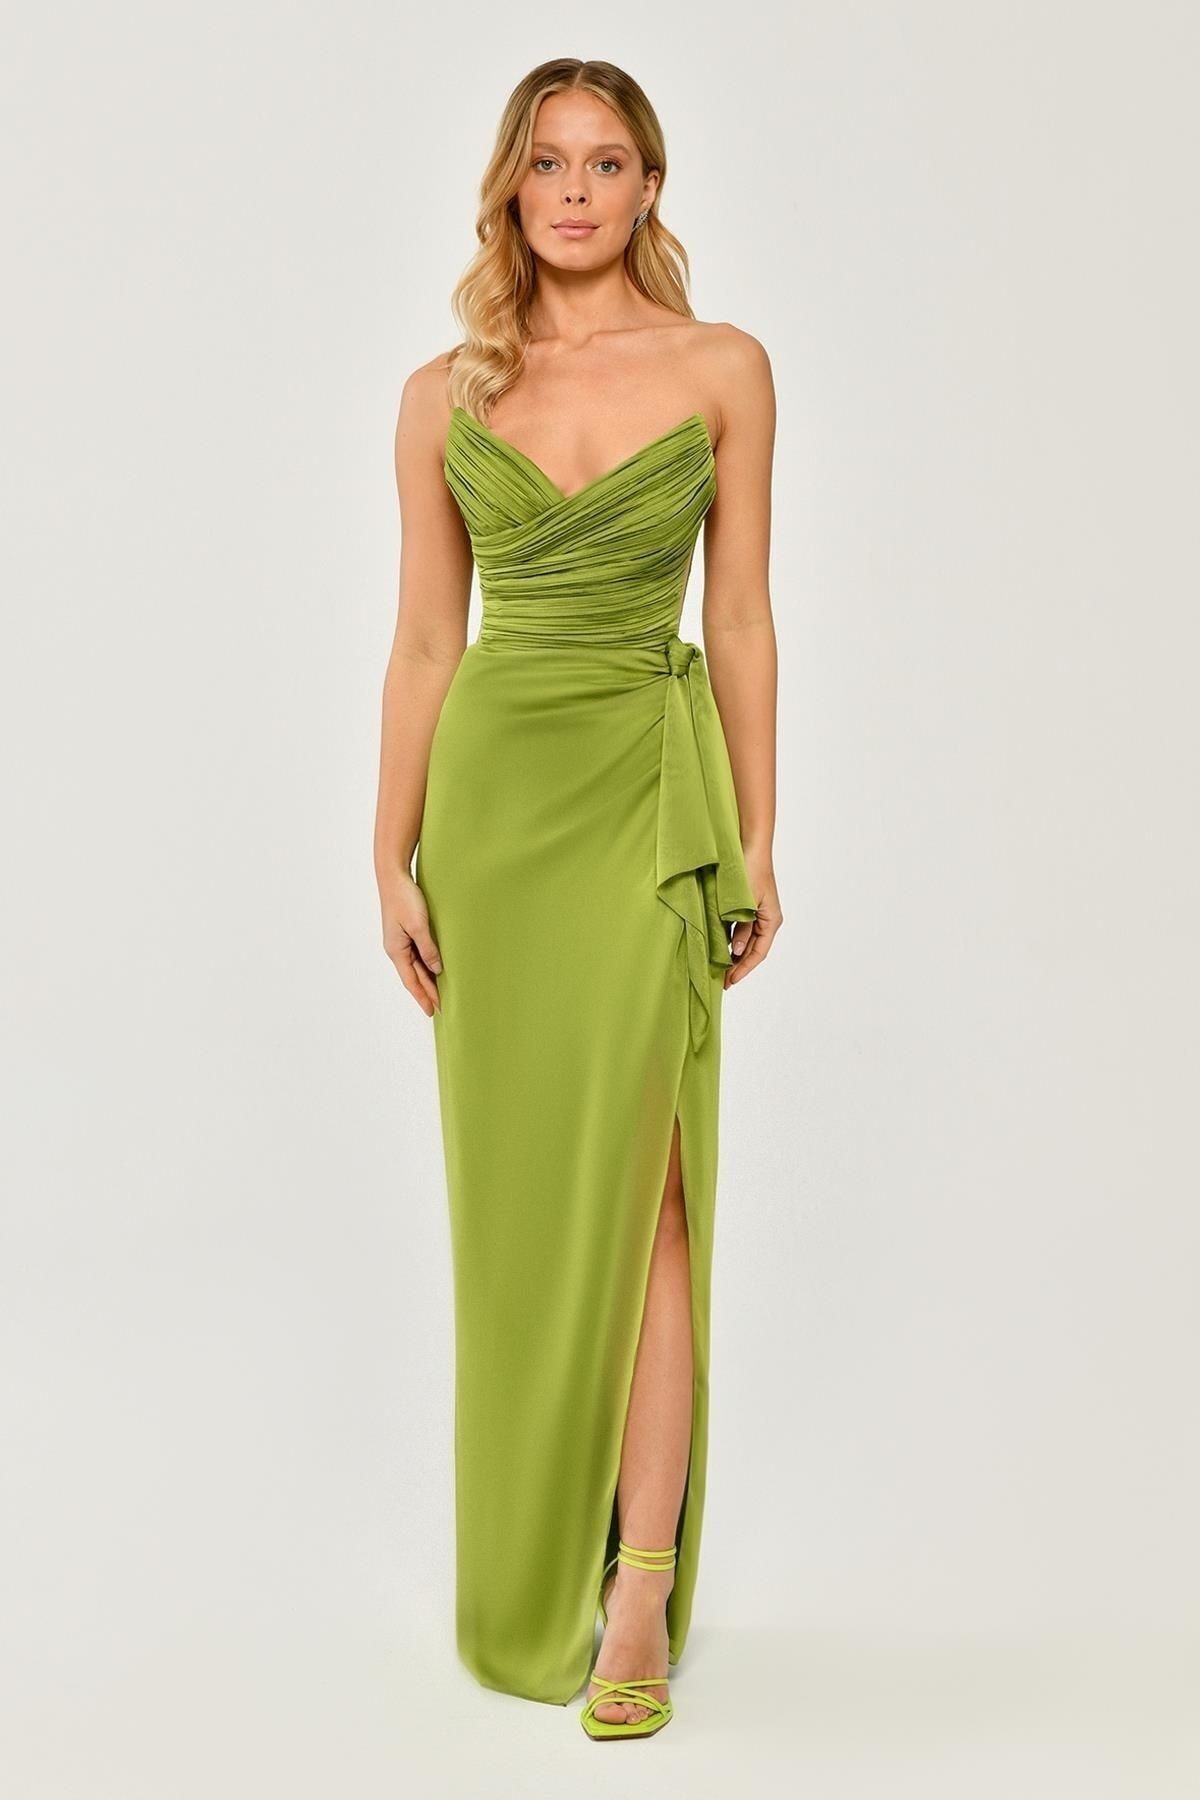 ALFABETA Kadın Straplez Melek Yaka Üst Pliseli Yandan Yırtmaçlı Şifon Uzun Yeşil Abiye & Mezuniyet Elbisesi A